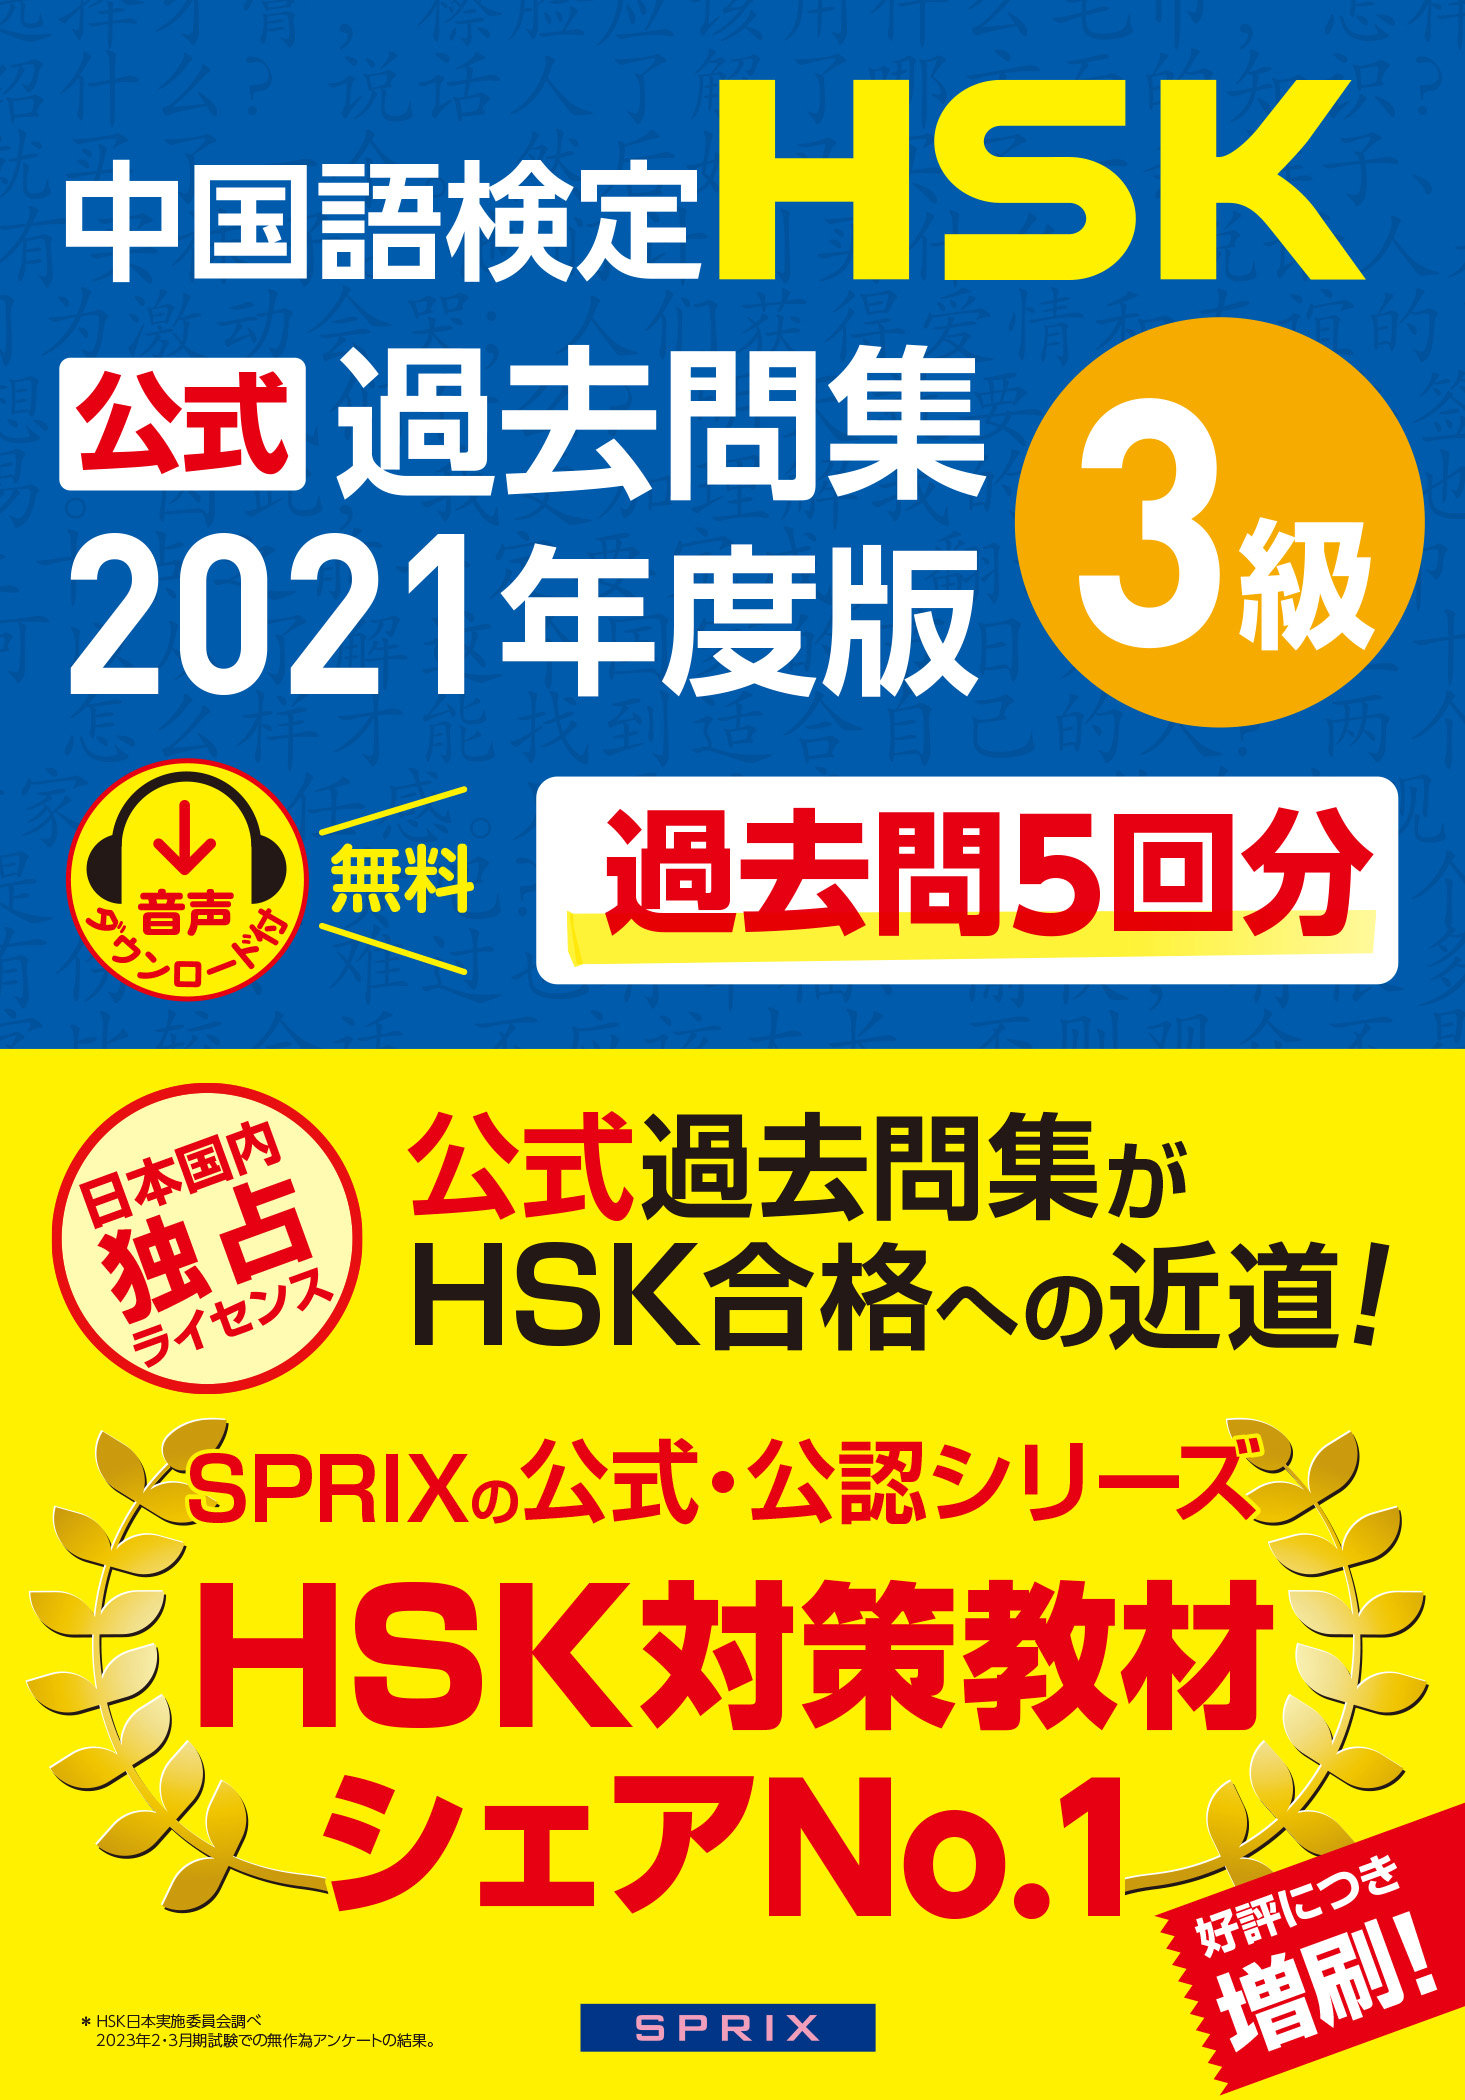 教材について | HSK 日本で一番受けられている中国語検定